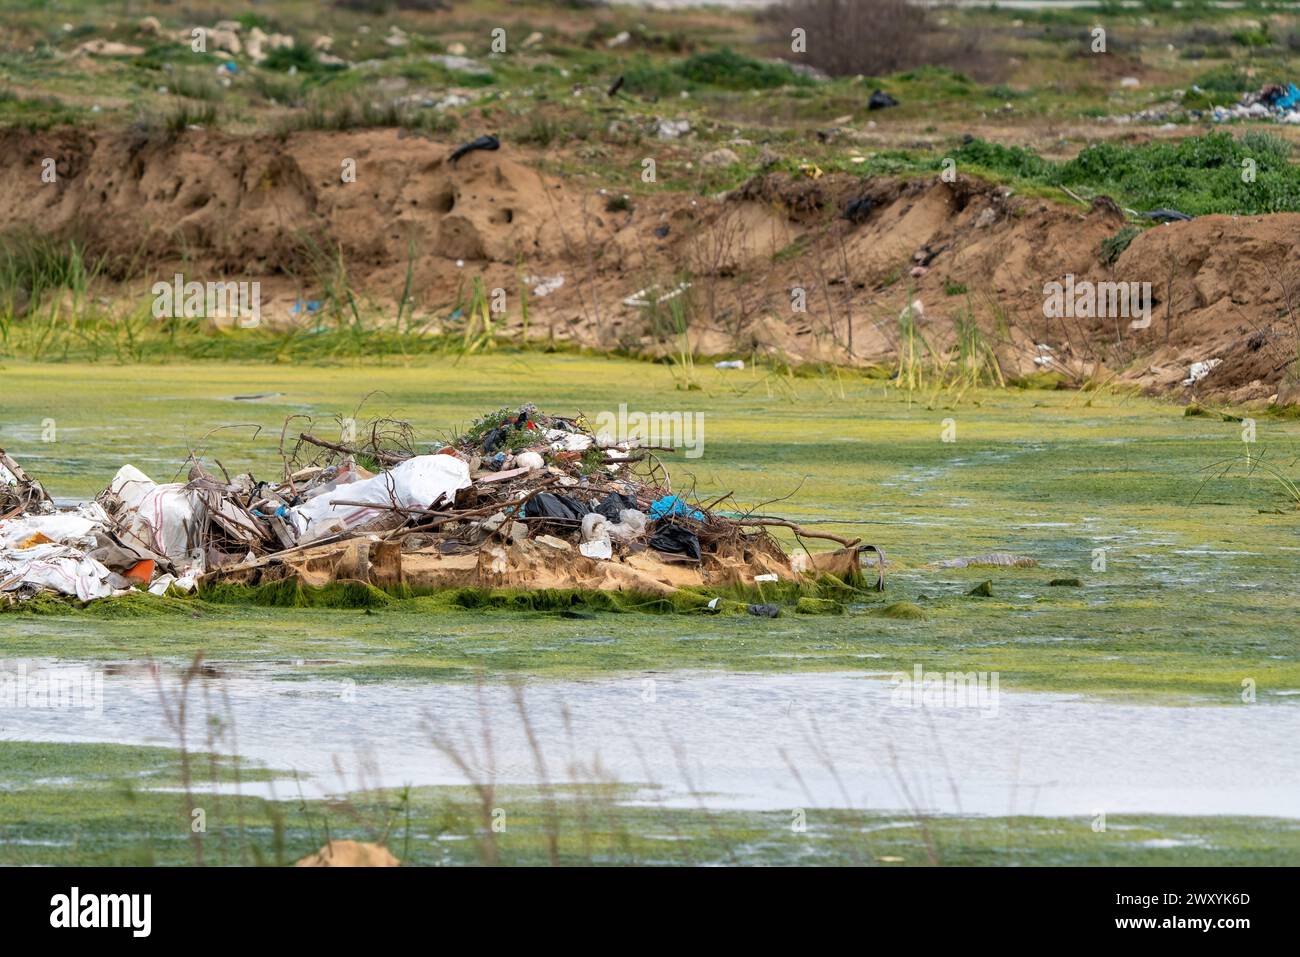 Abfälle und Müll aus touristischen Einrichtungen werden in die Lebensräume von Vögeln geworfen. Verschmutzung von Feuchtgebieten, chemische Verschmutzung. Stockfoto